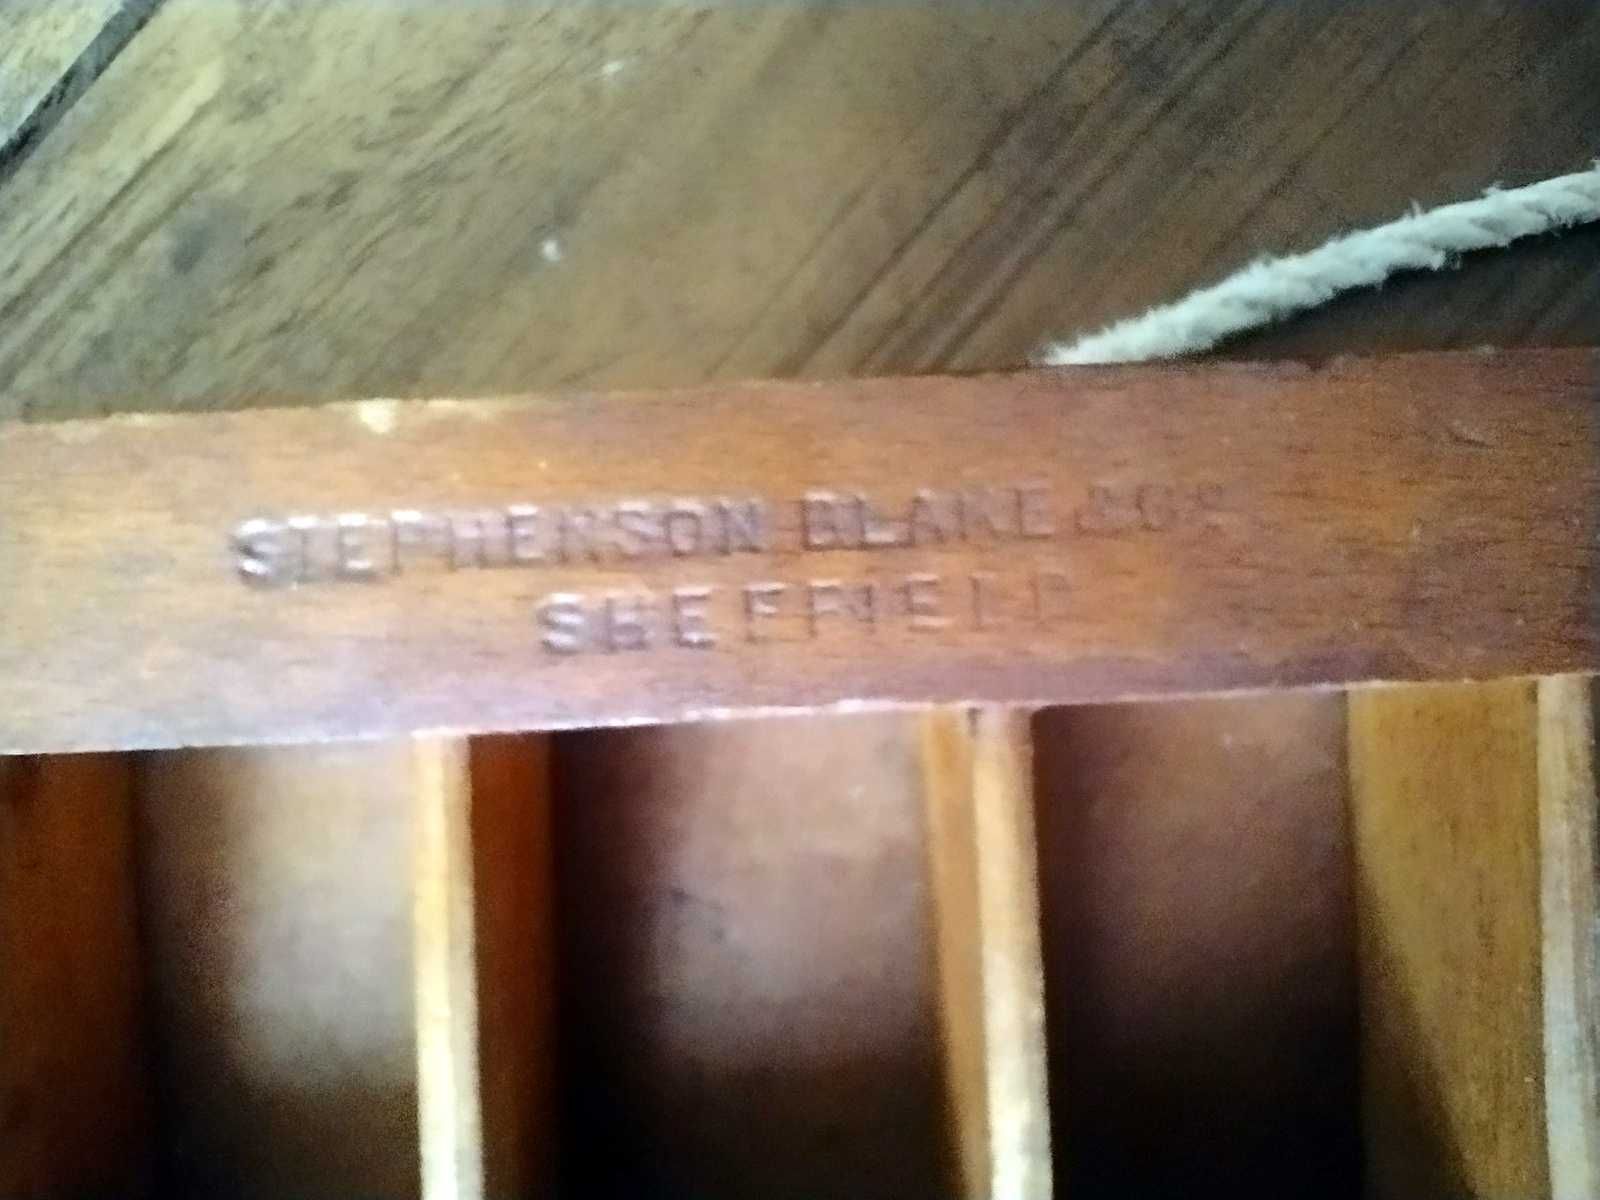 Stephenson Blake & Co Sheffield, zabytkowa drewniana skrzynka  XIX w